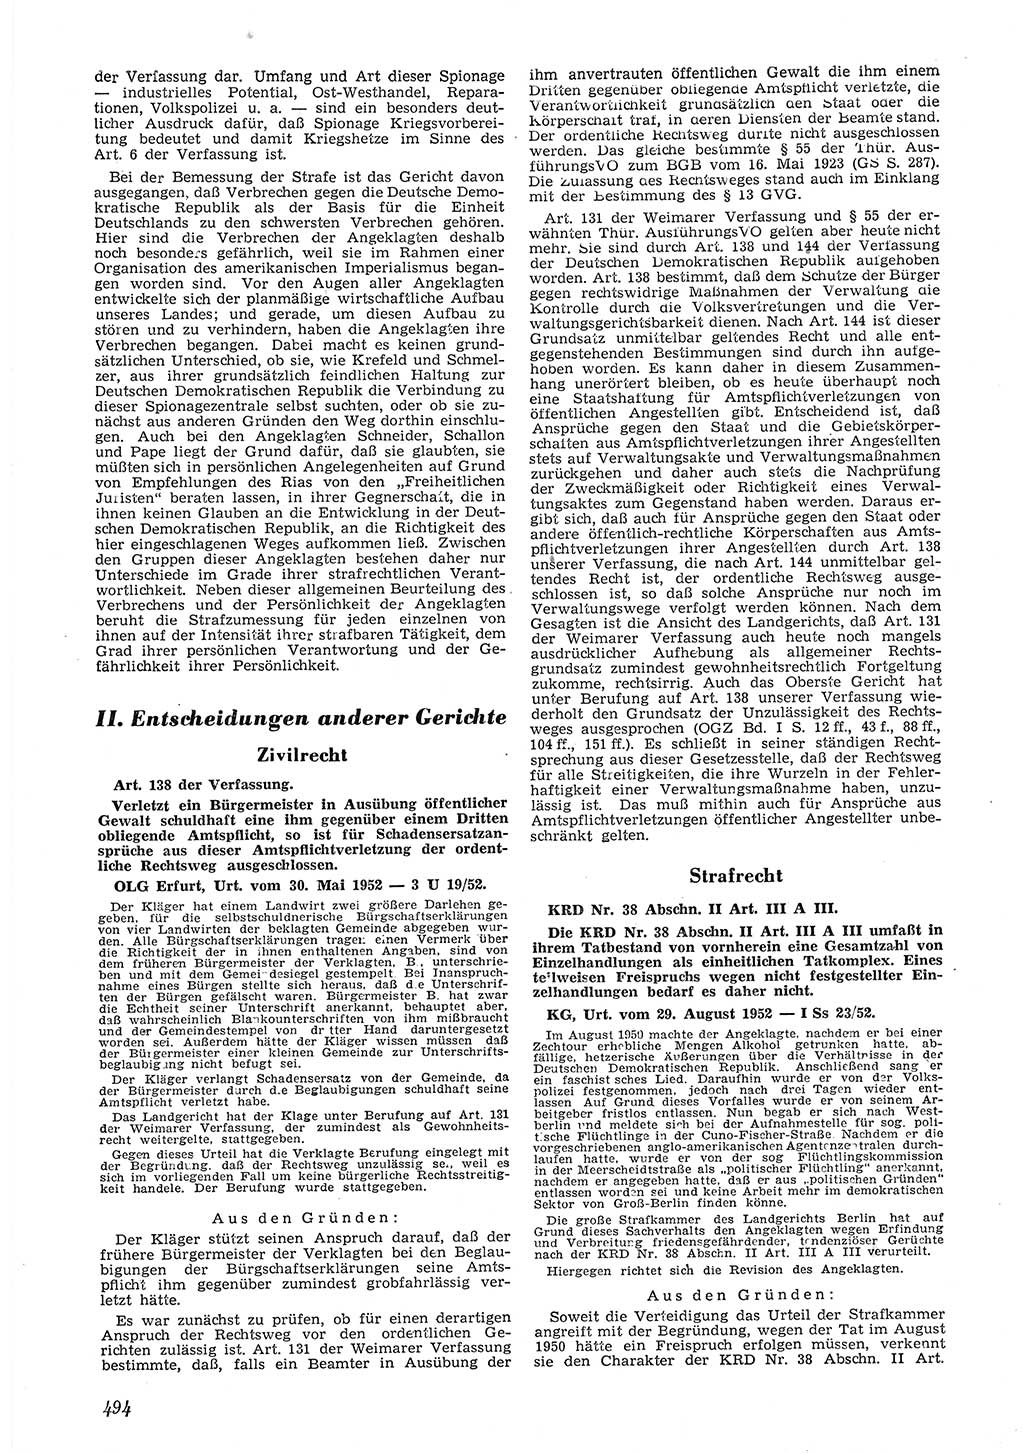 Neue Justiz (NJ), Zeitschrift für Recht und Rechtswissenschaft [Deutsche Demokratische Republik (DDR)], 6. Jahrgang 1952, Seite 494 (NJ DDR 1952, S. 494)